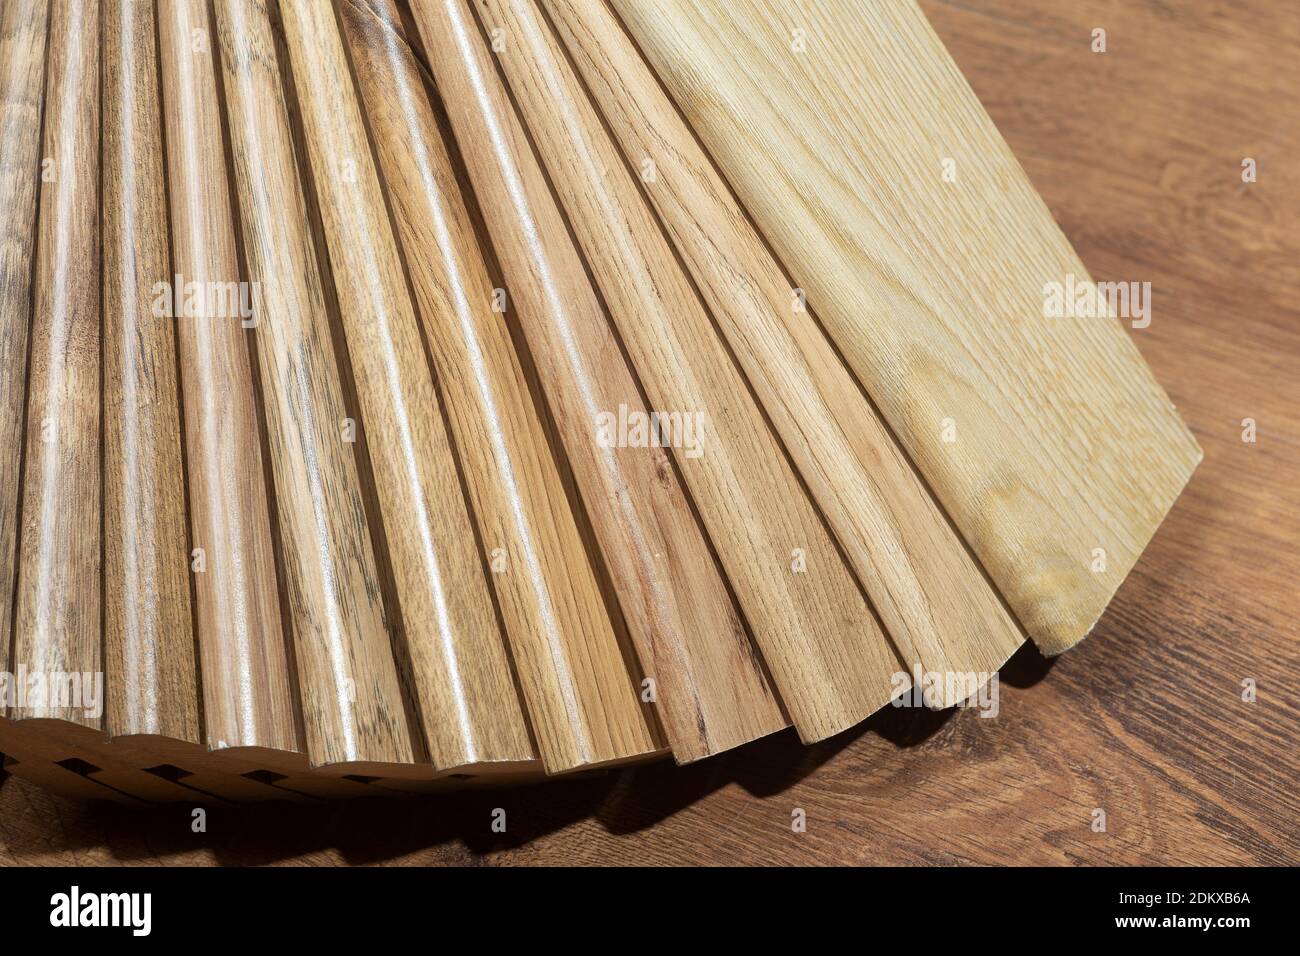 Sfondo skirting board. Esempi di battiscopa con motivo e struttura in legno per pavimenti e interni. Produzione di pavimenti in legno Foto Stock